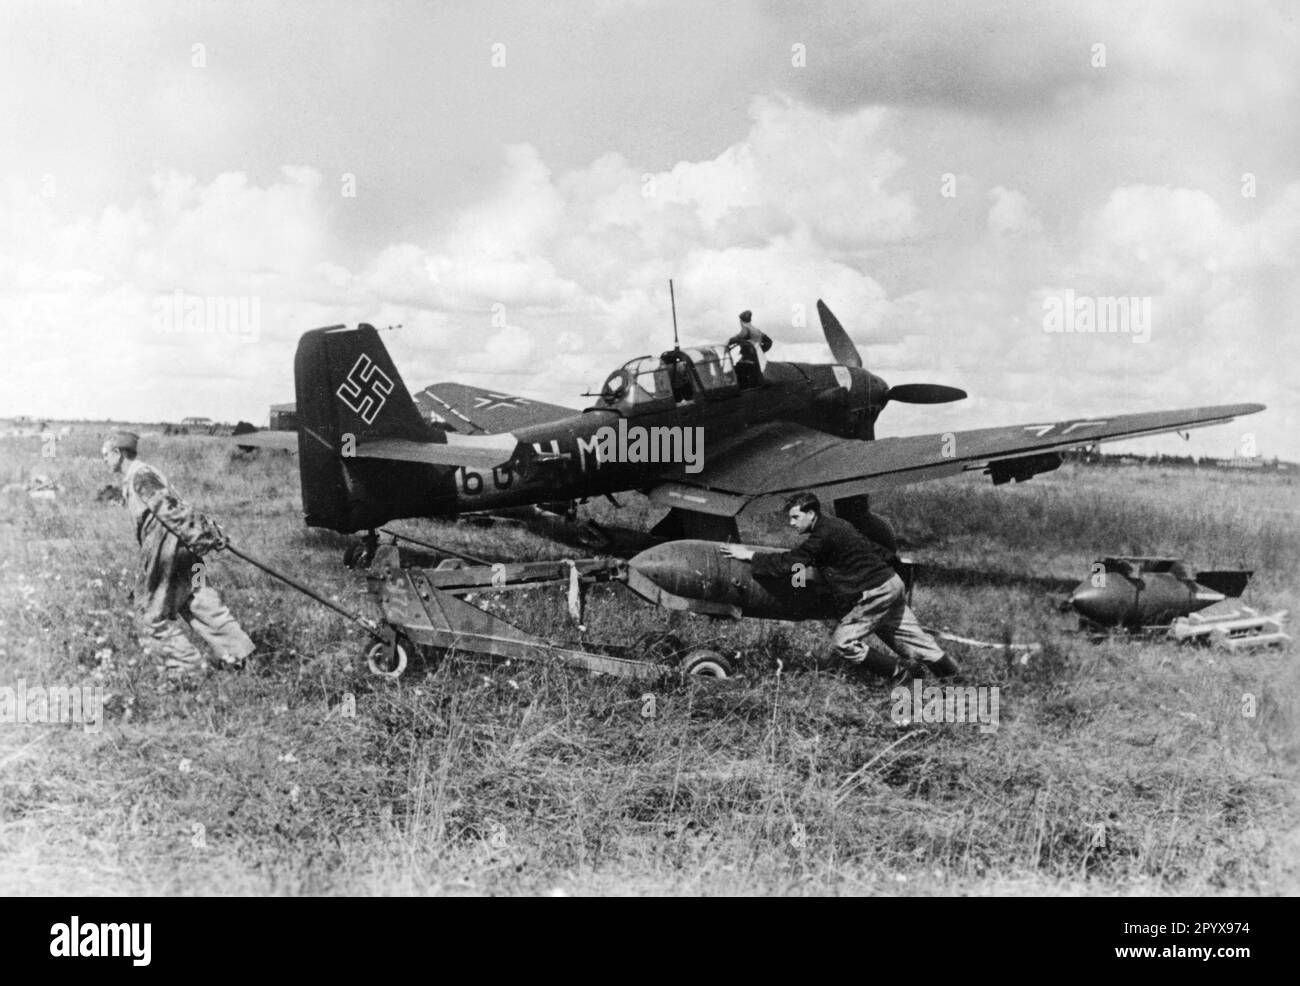 "Ladung eines Junkers Ju 87 'Stuka' mit Bomben auf einem Flugplatz." Foto: Jütte. [Maschinelle Übersetzung]' Stockfoto